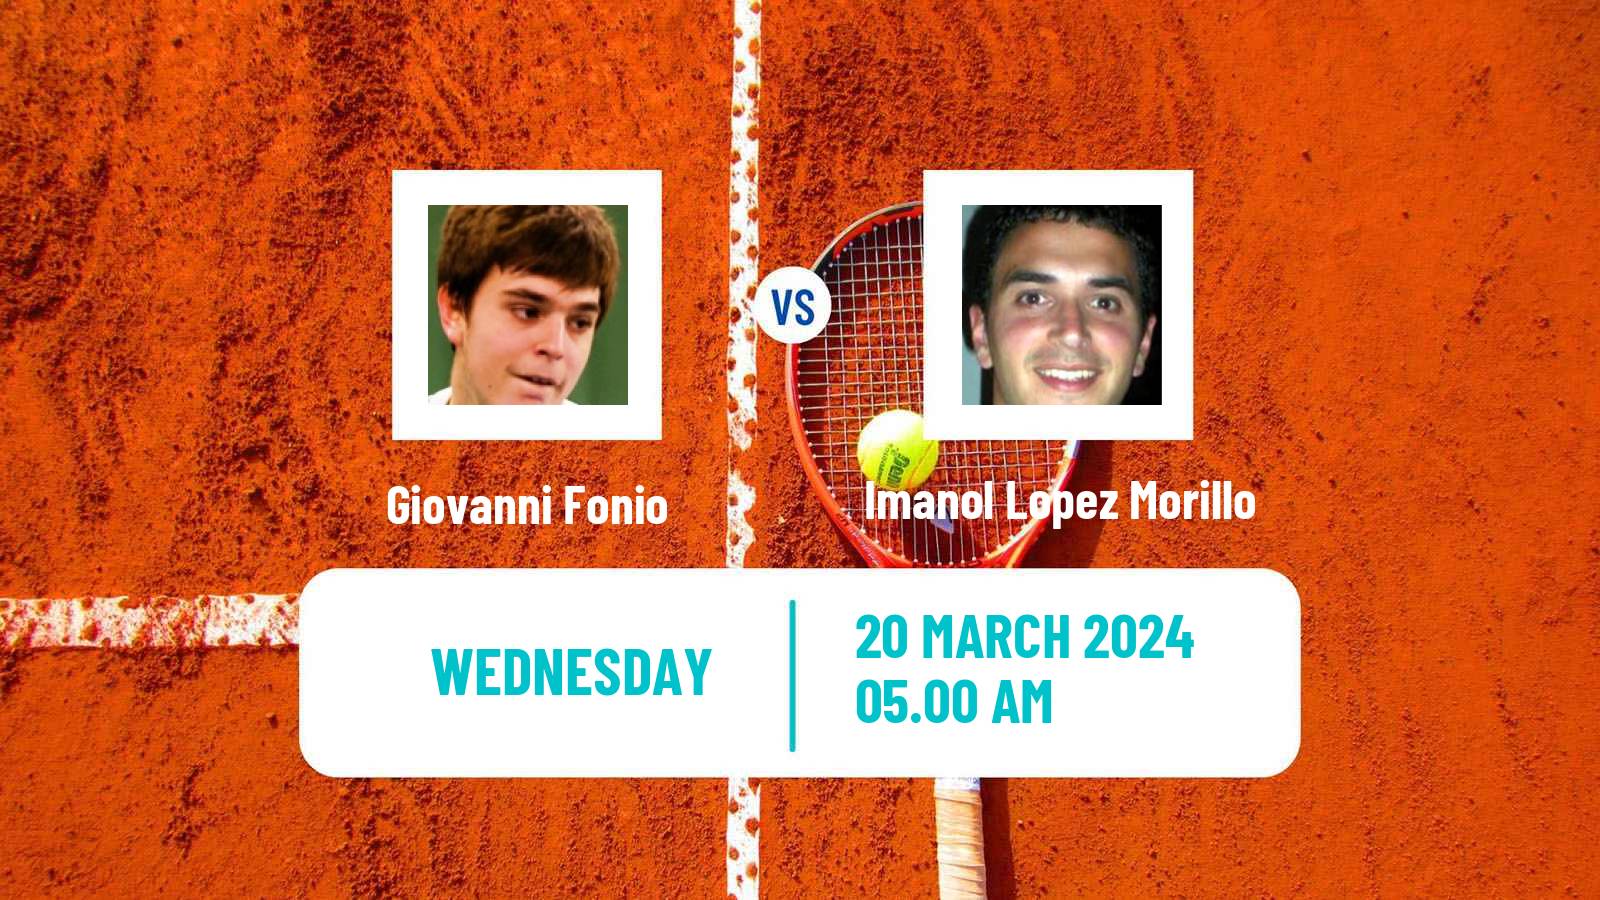 Tennis ITF M25 Badalona Men Giovanni Fonio - Imanol Lopez Morillo